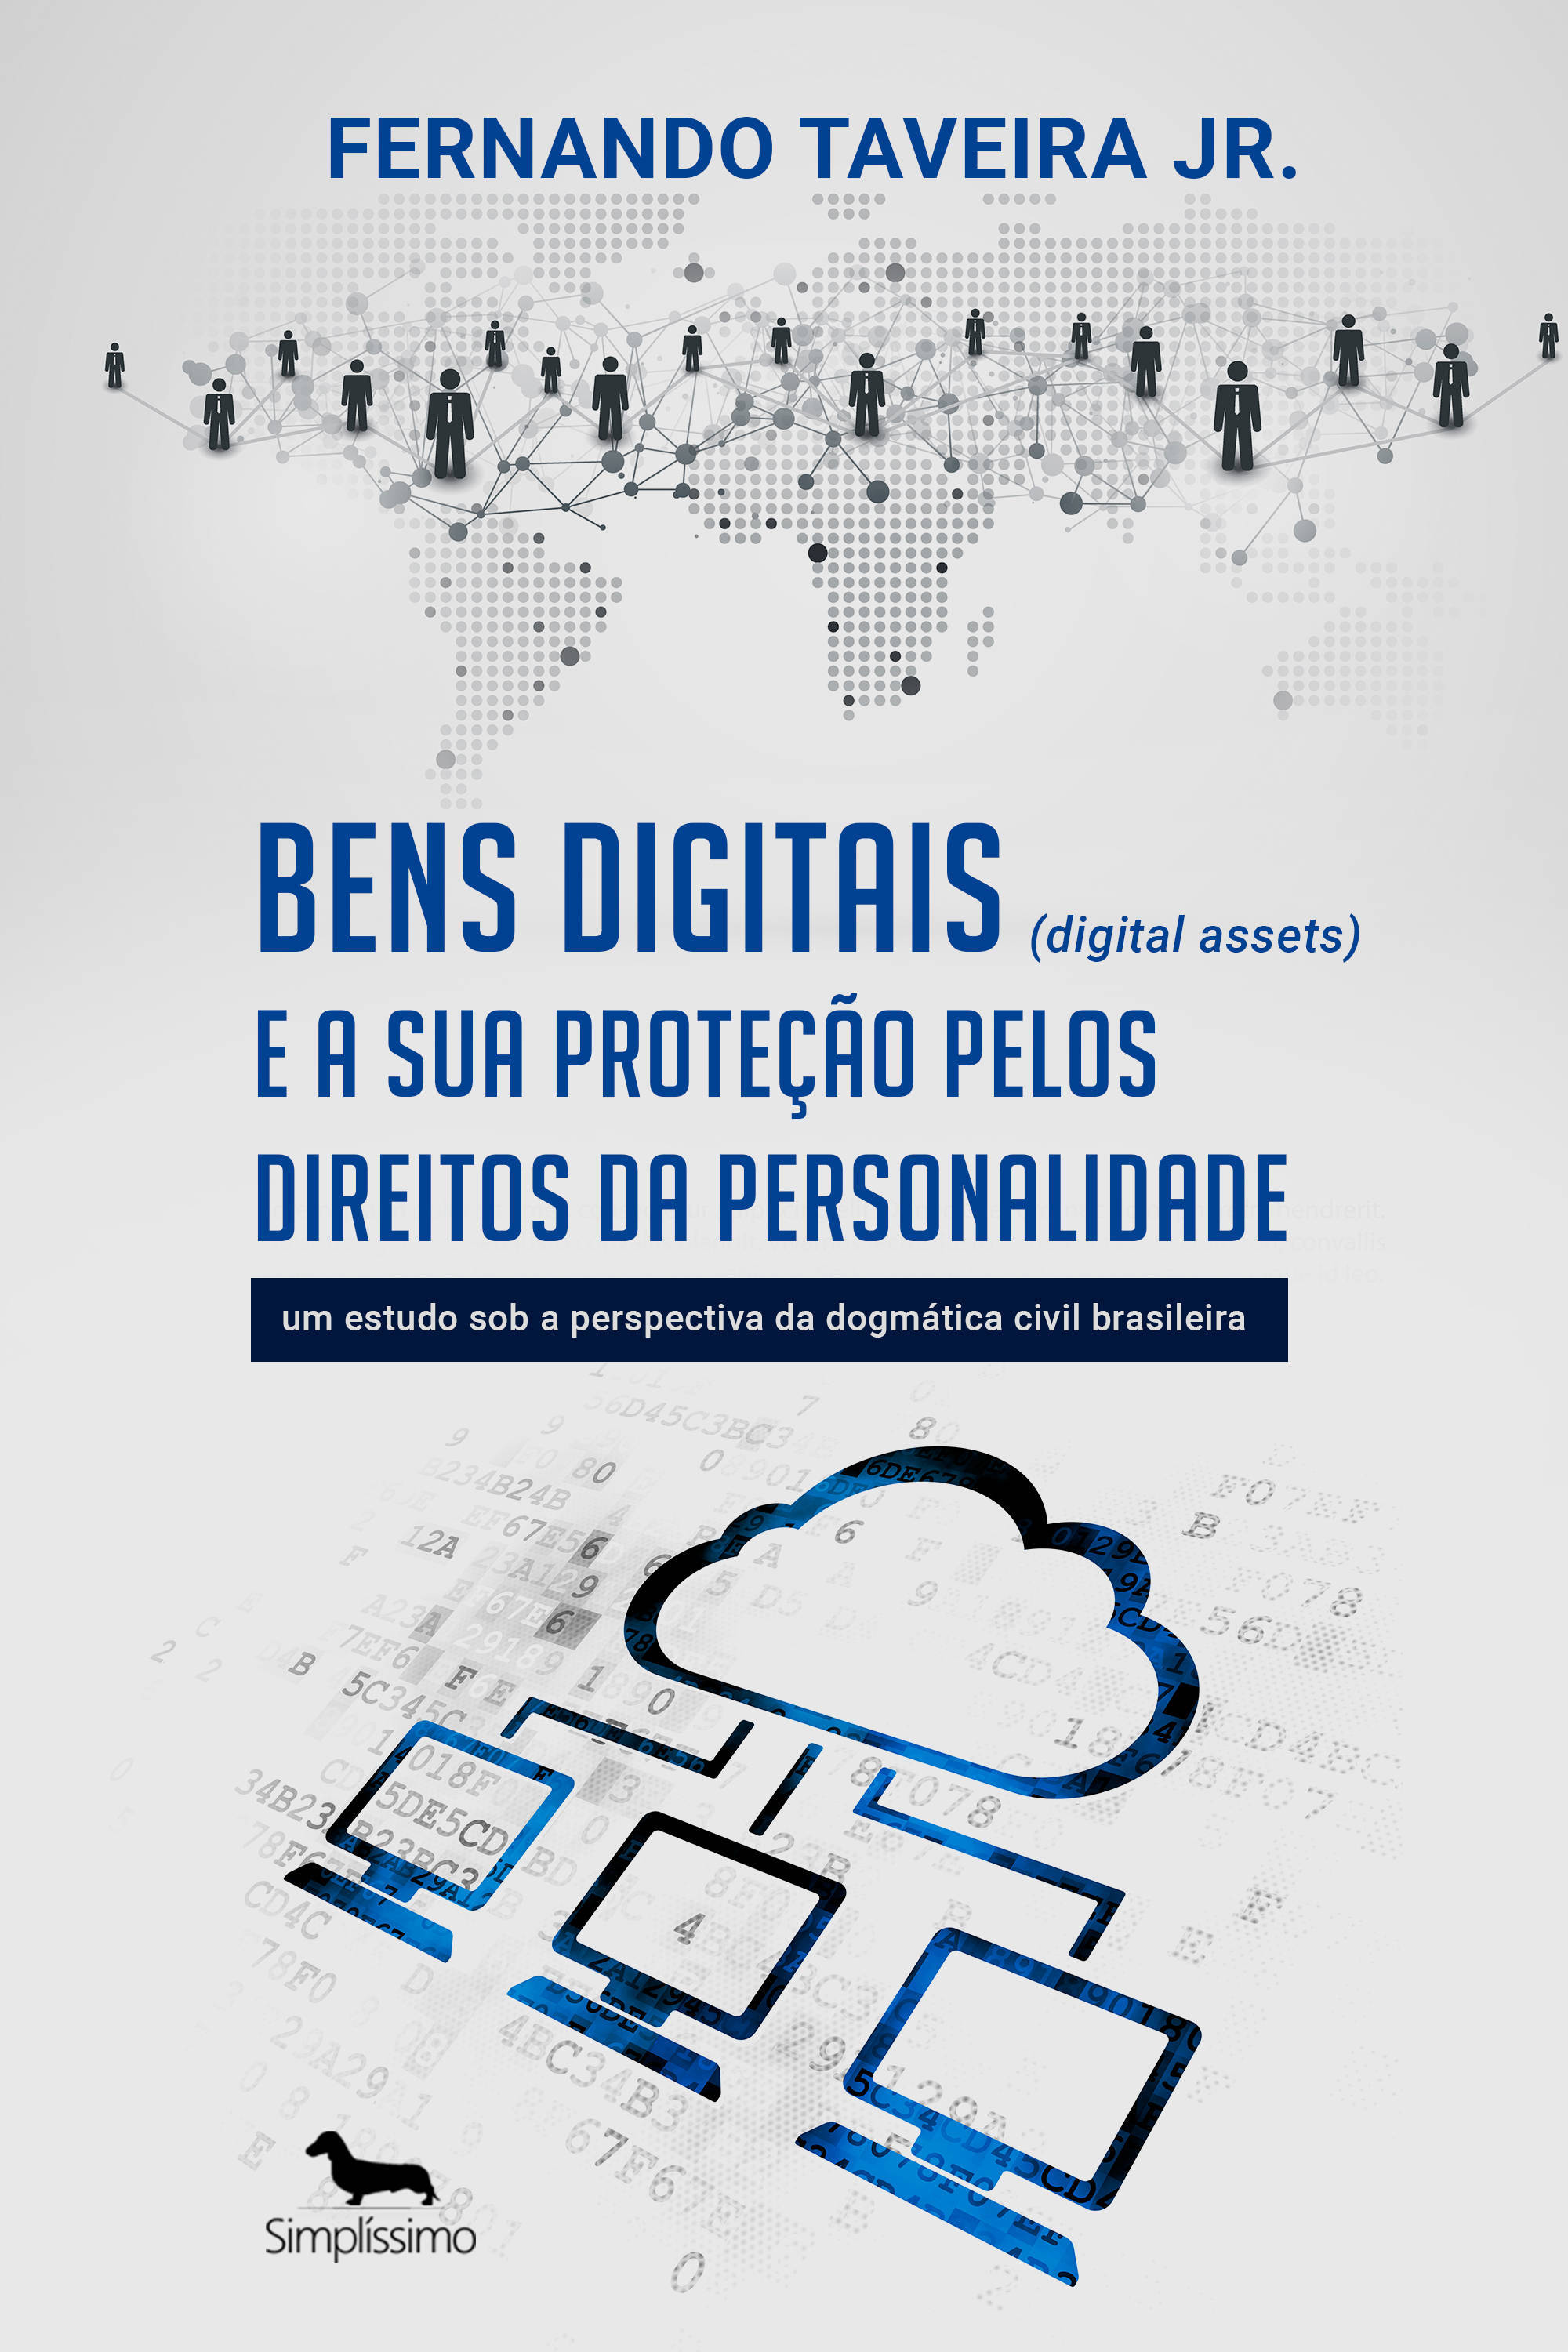 Bens digitais (digital assets) e a sua proteção pelos direitos da personalidade